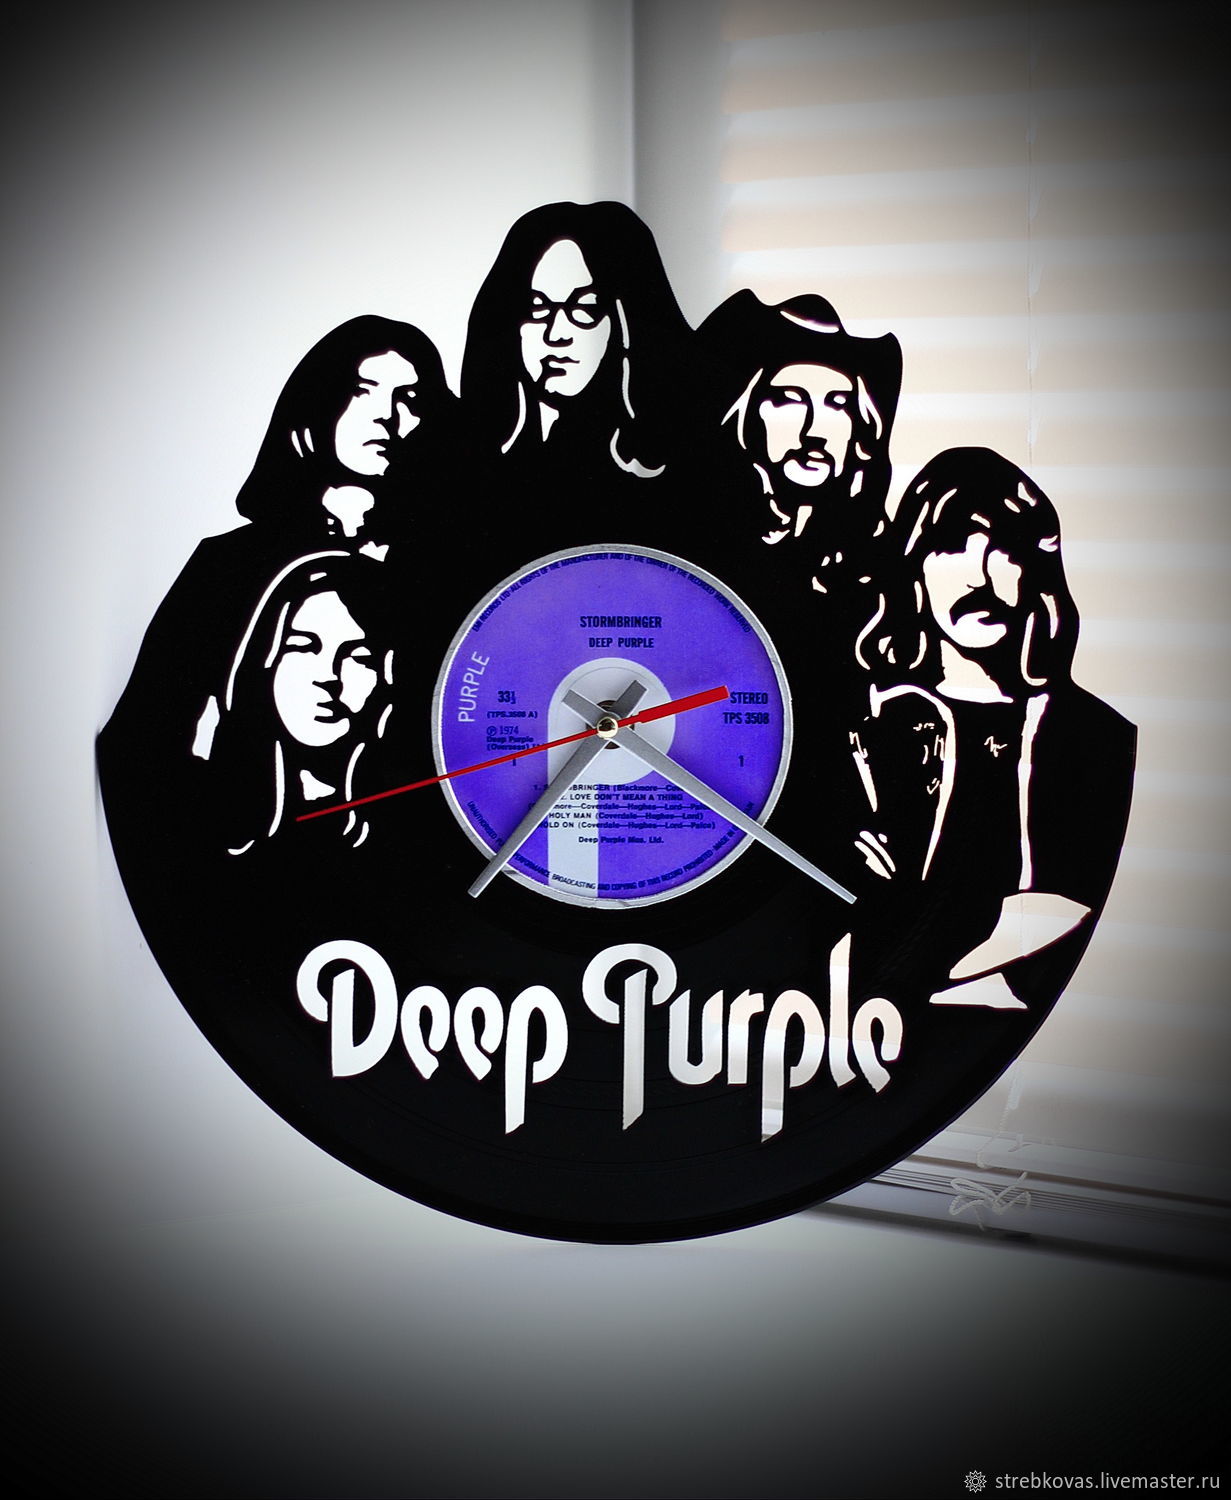 Дип перпл время. Группа дип перпл. Часы из виниловой пластинки Deep Purple. Дип перпл виниловые пластинки. Постеры дип перпл.